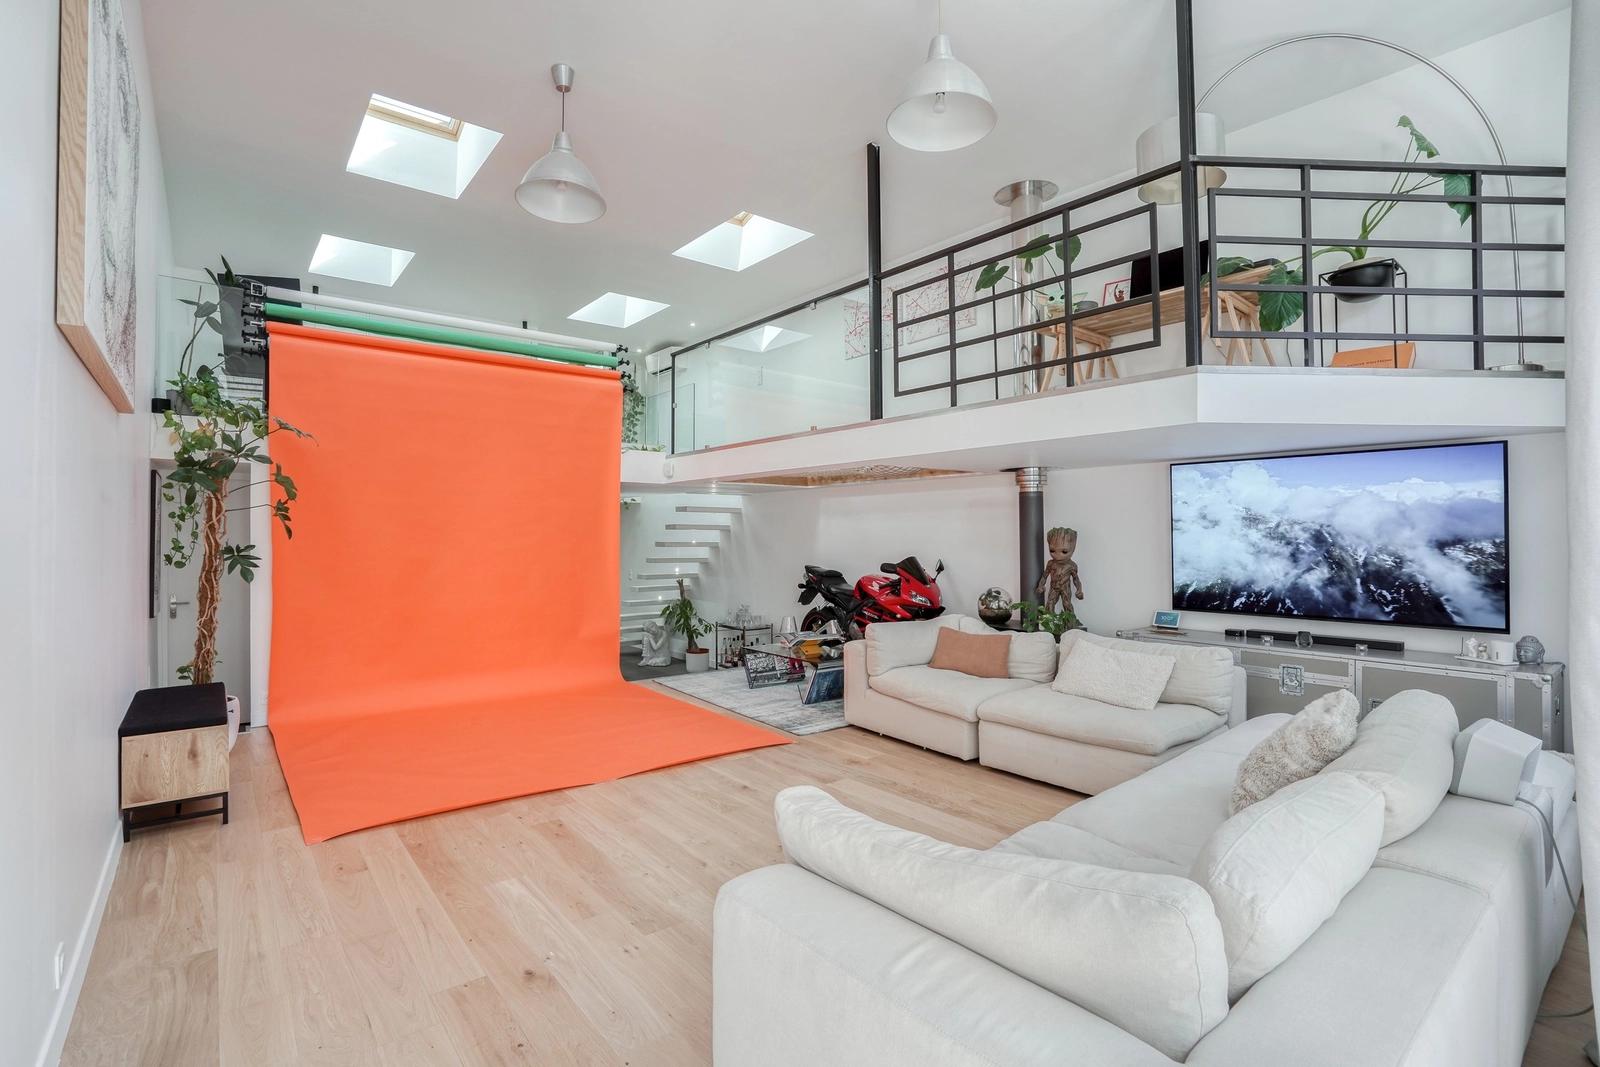 Sala dentro Loft/terraza/estudio fotográfico/localización cinematográfica con orientación sur - 0